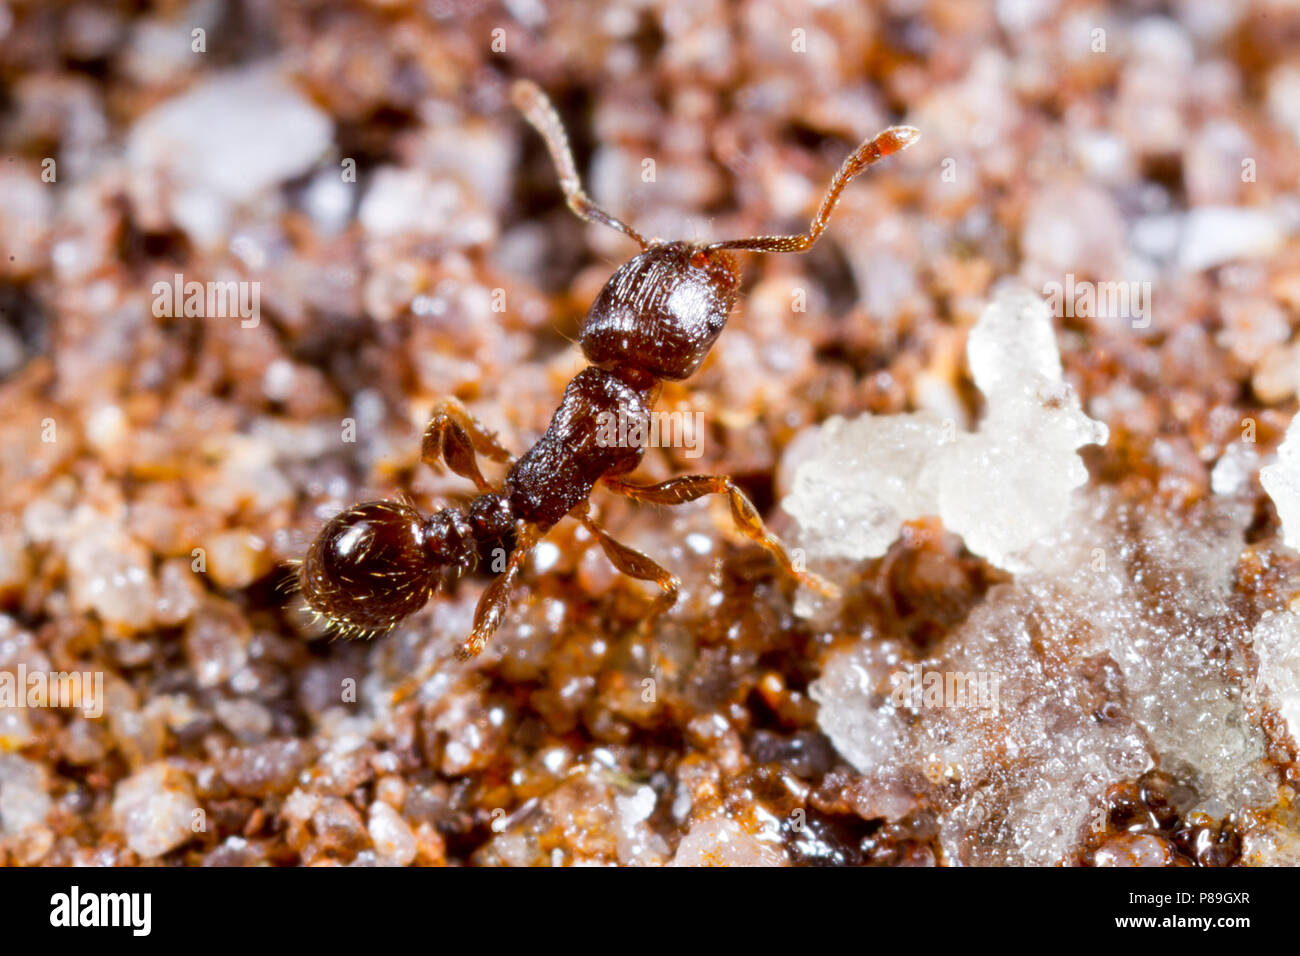 Tetramorium caespitum chaussée (Ant) travailleurs adultes s'alimentant à l'appât. Dorset, Angleterre. Avril. Banque D'Images